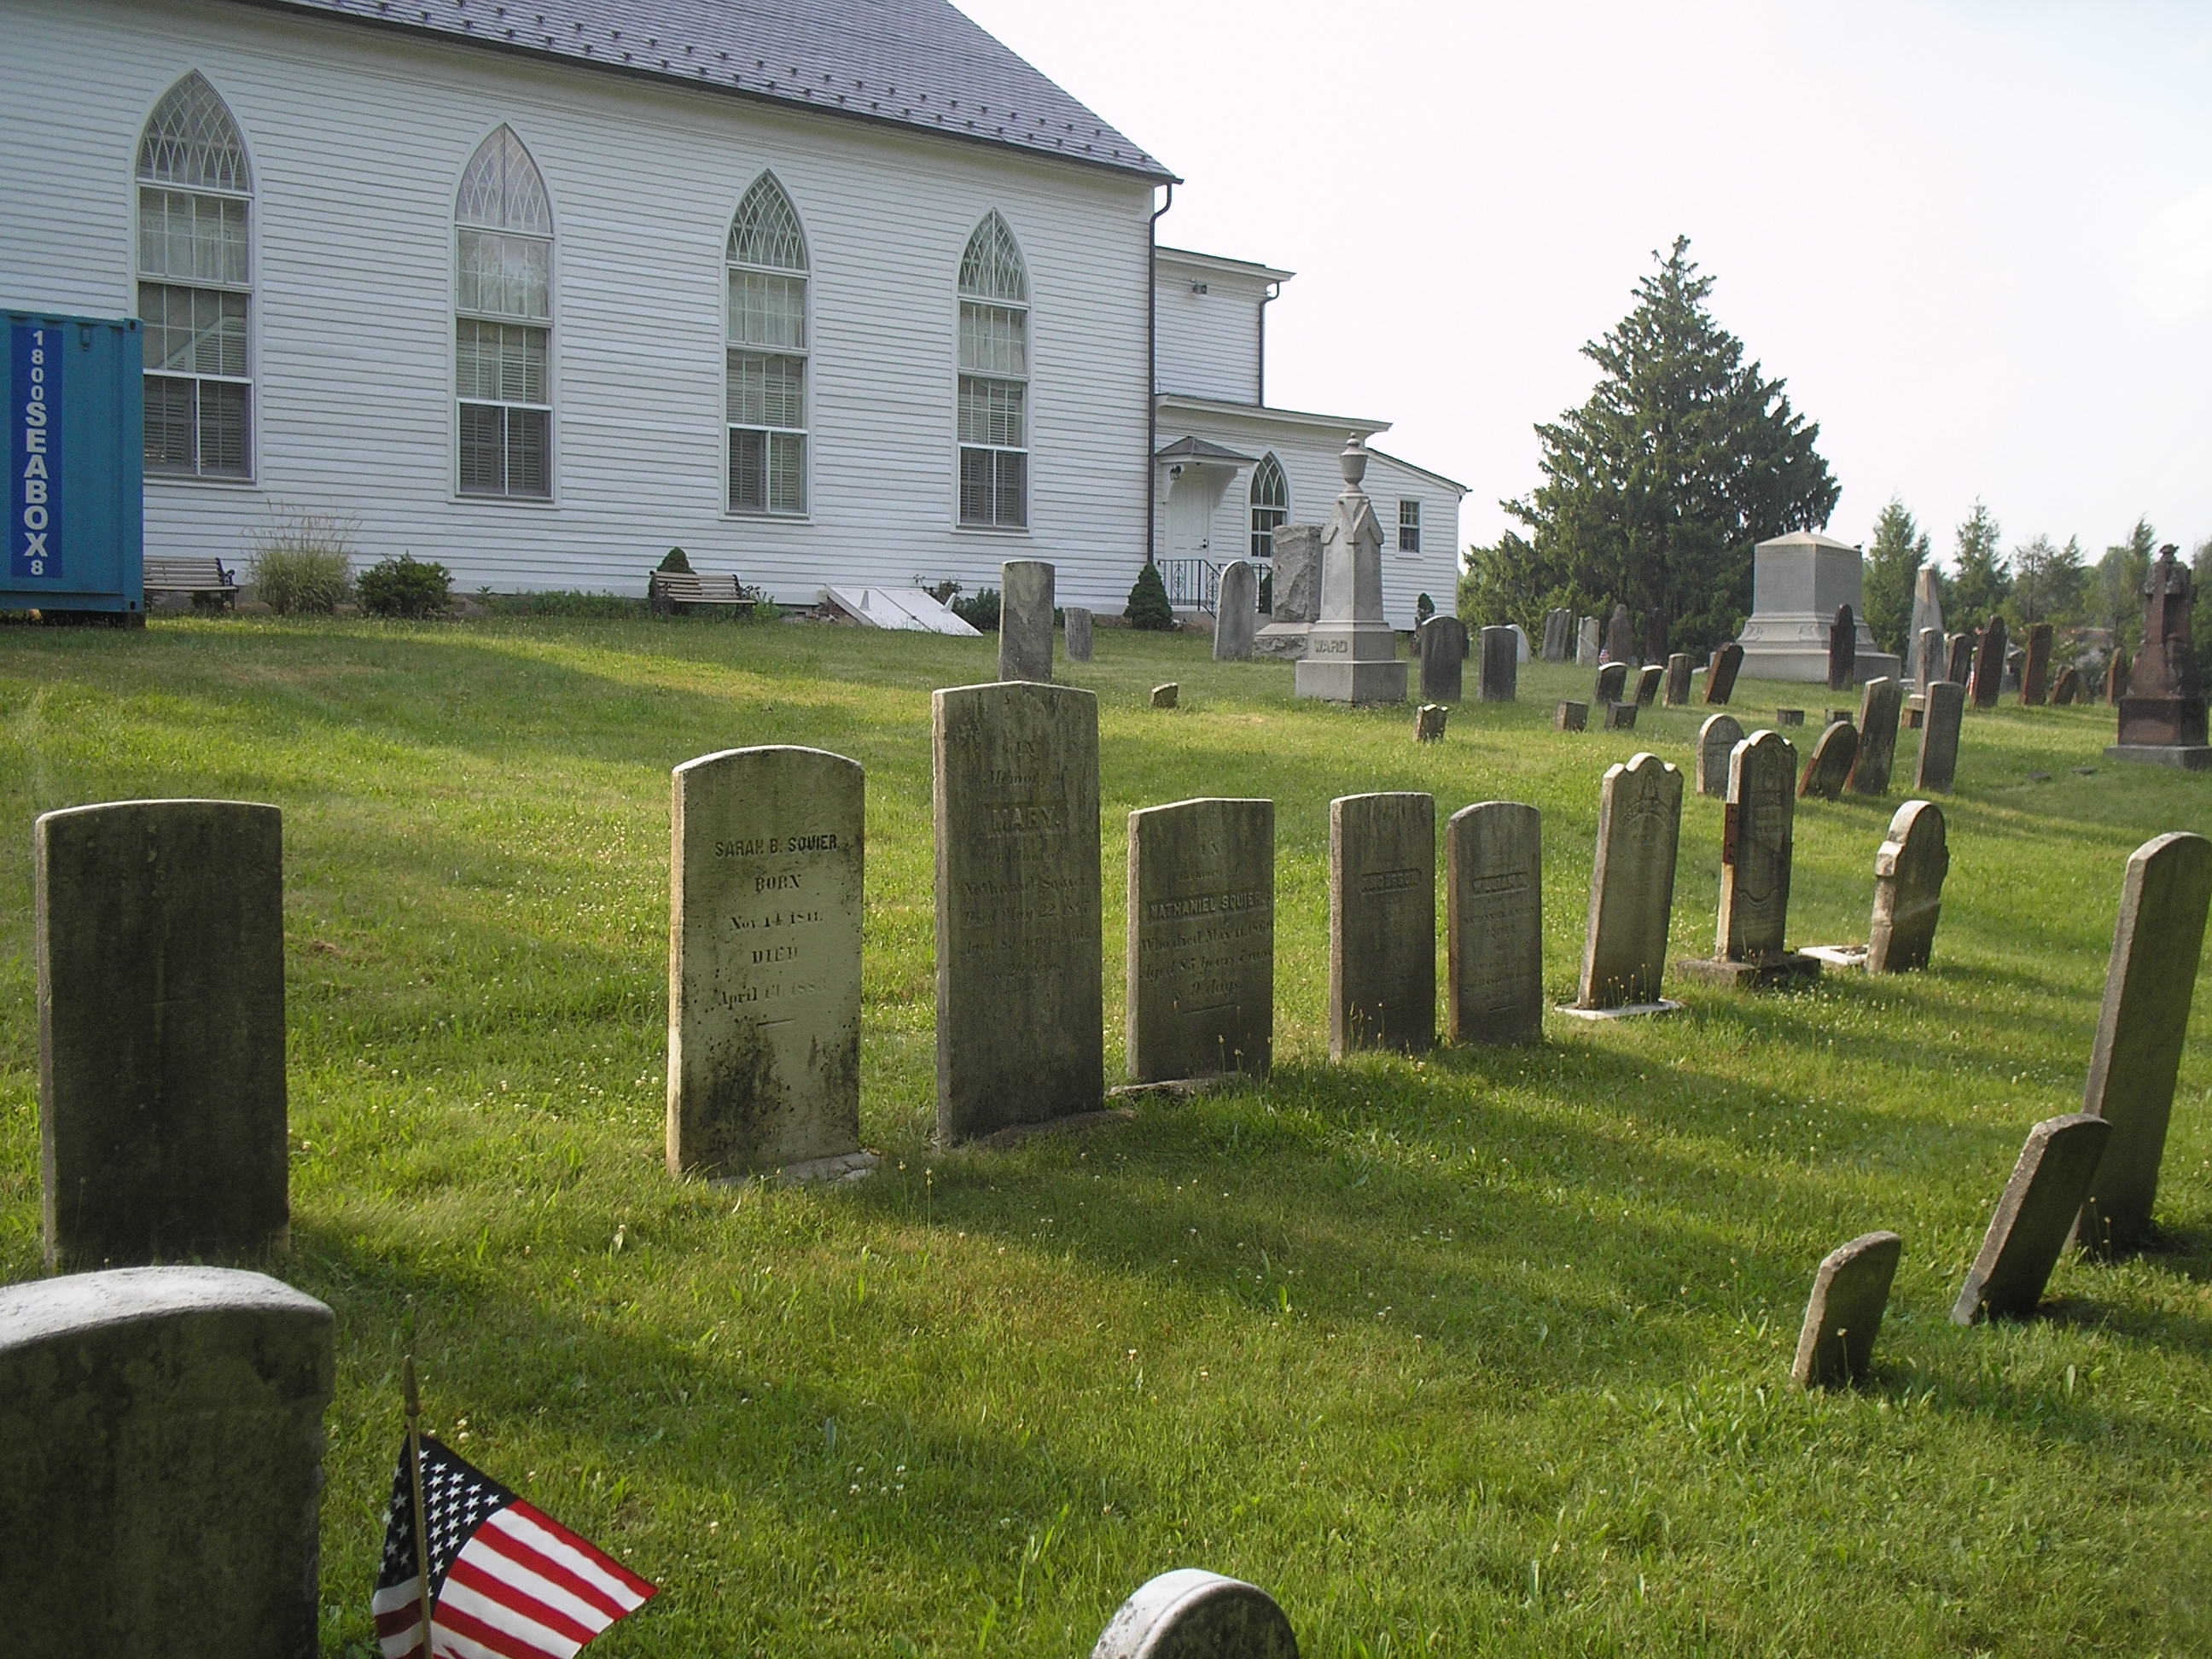 Hanover Presbyterian Church Cemetery